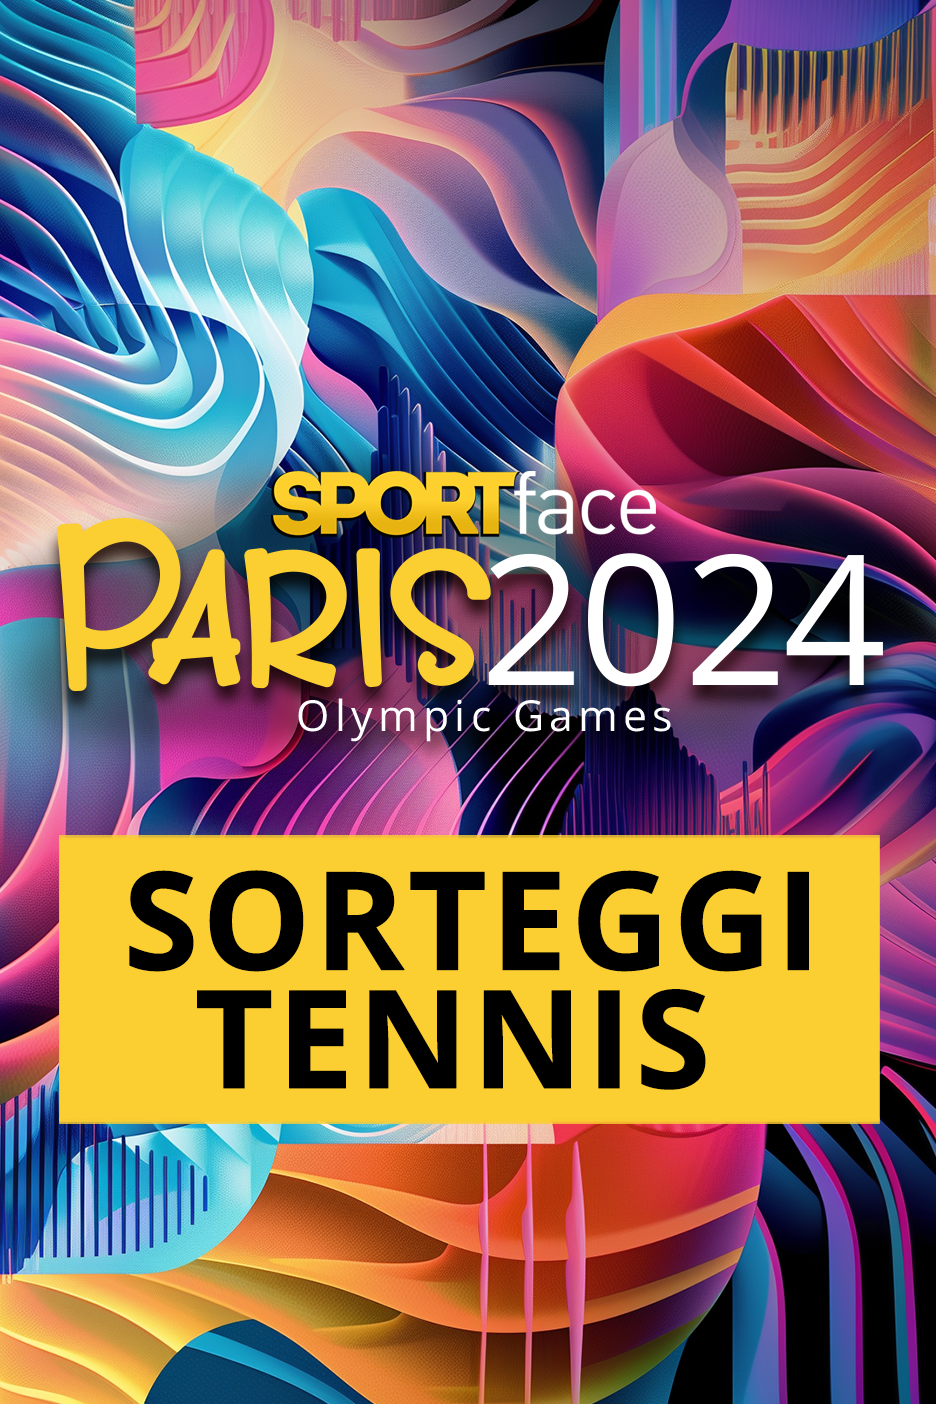 Sorteggi Tennis - Paris 2024